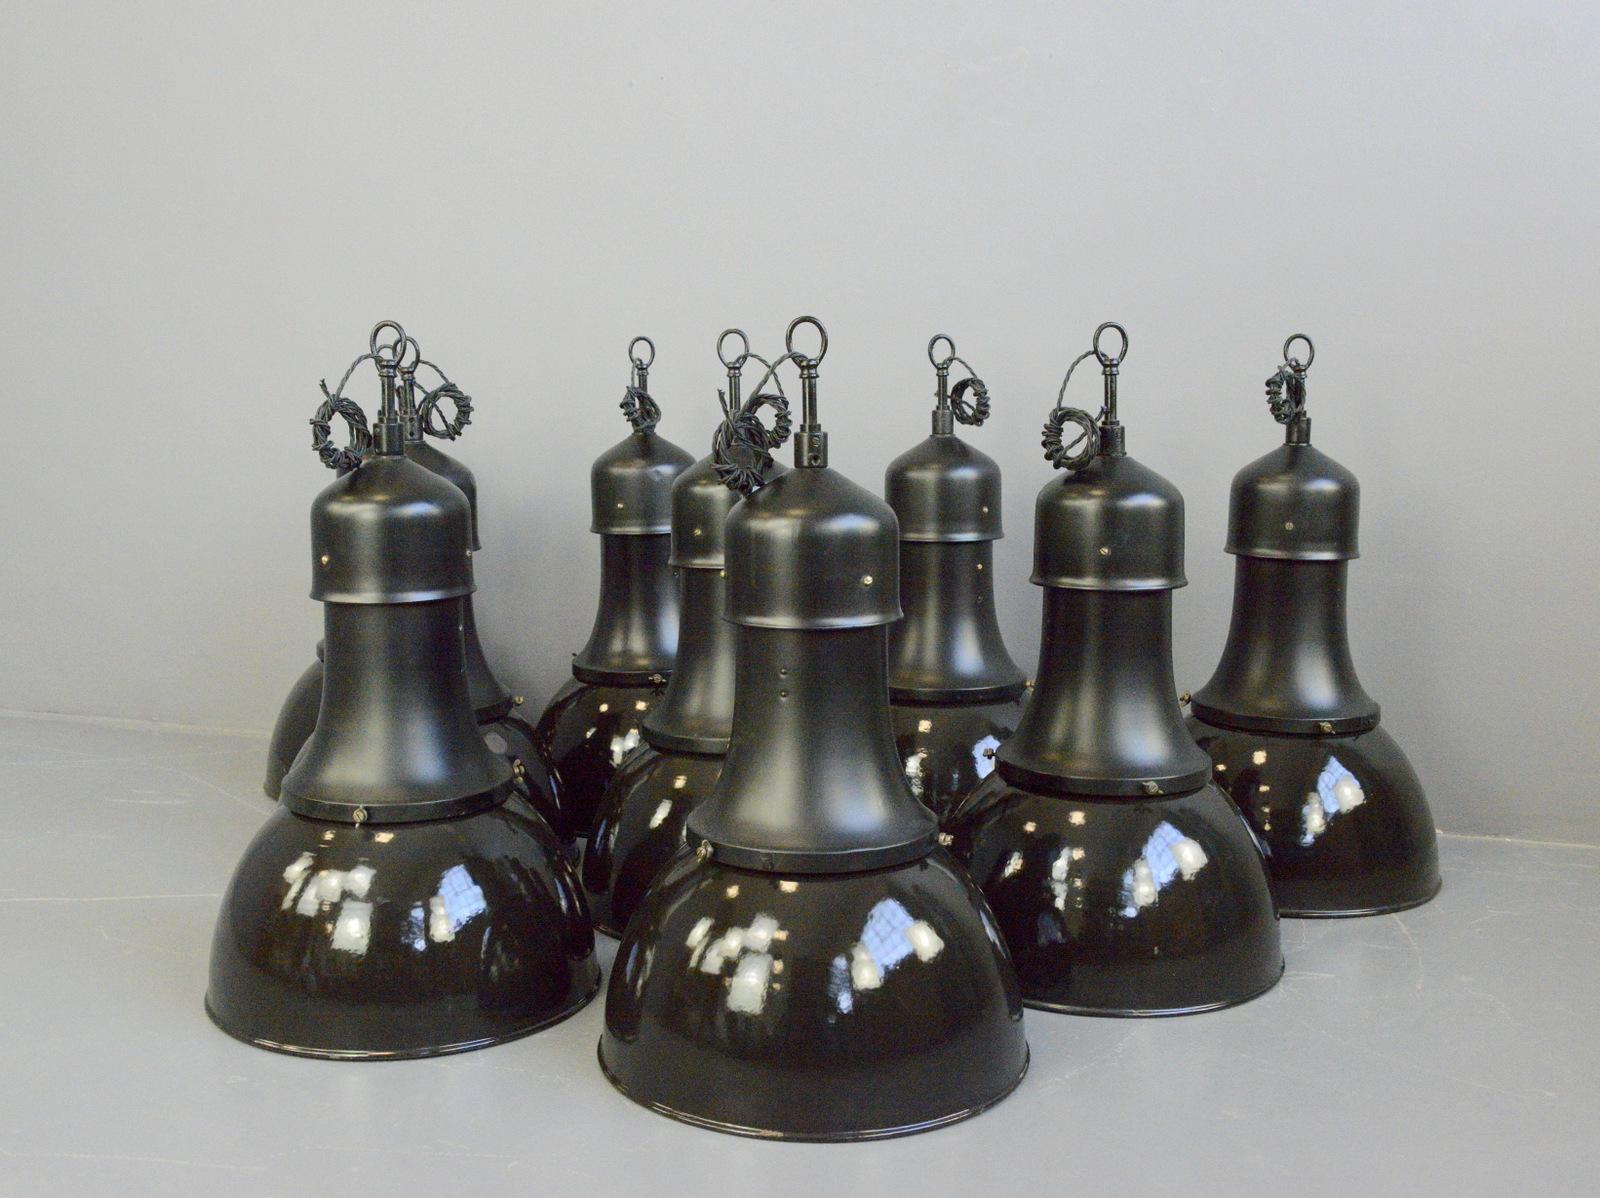 Modèle 530 Luminaires suspendus Bauhaus par Kandem Circa 1920s

- Le prix est par lampe (2 disponibles)
- Nuances d'émail noir vitreux
- Cols en acier avec vis en laiton
- Accrochage de crochets en acier
- Accepte les ampoules à vis E27
- Livré avec